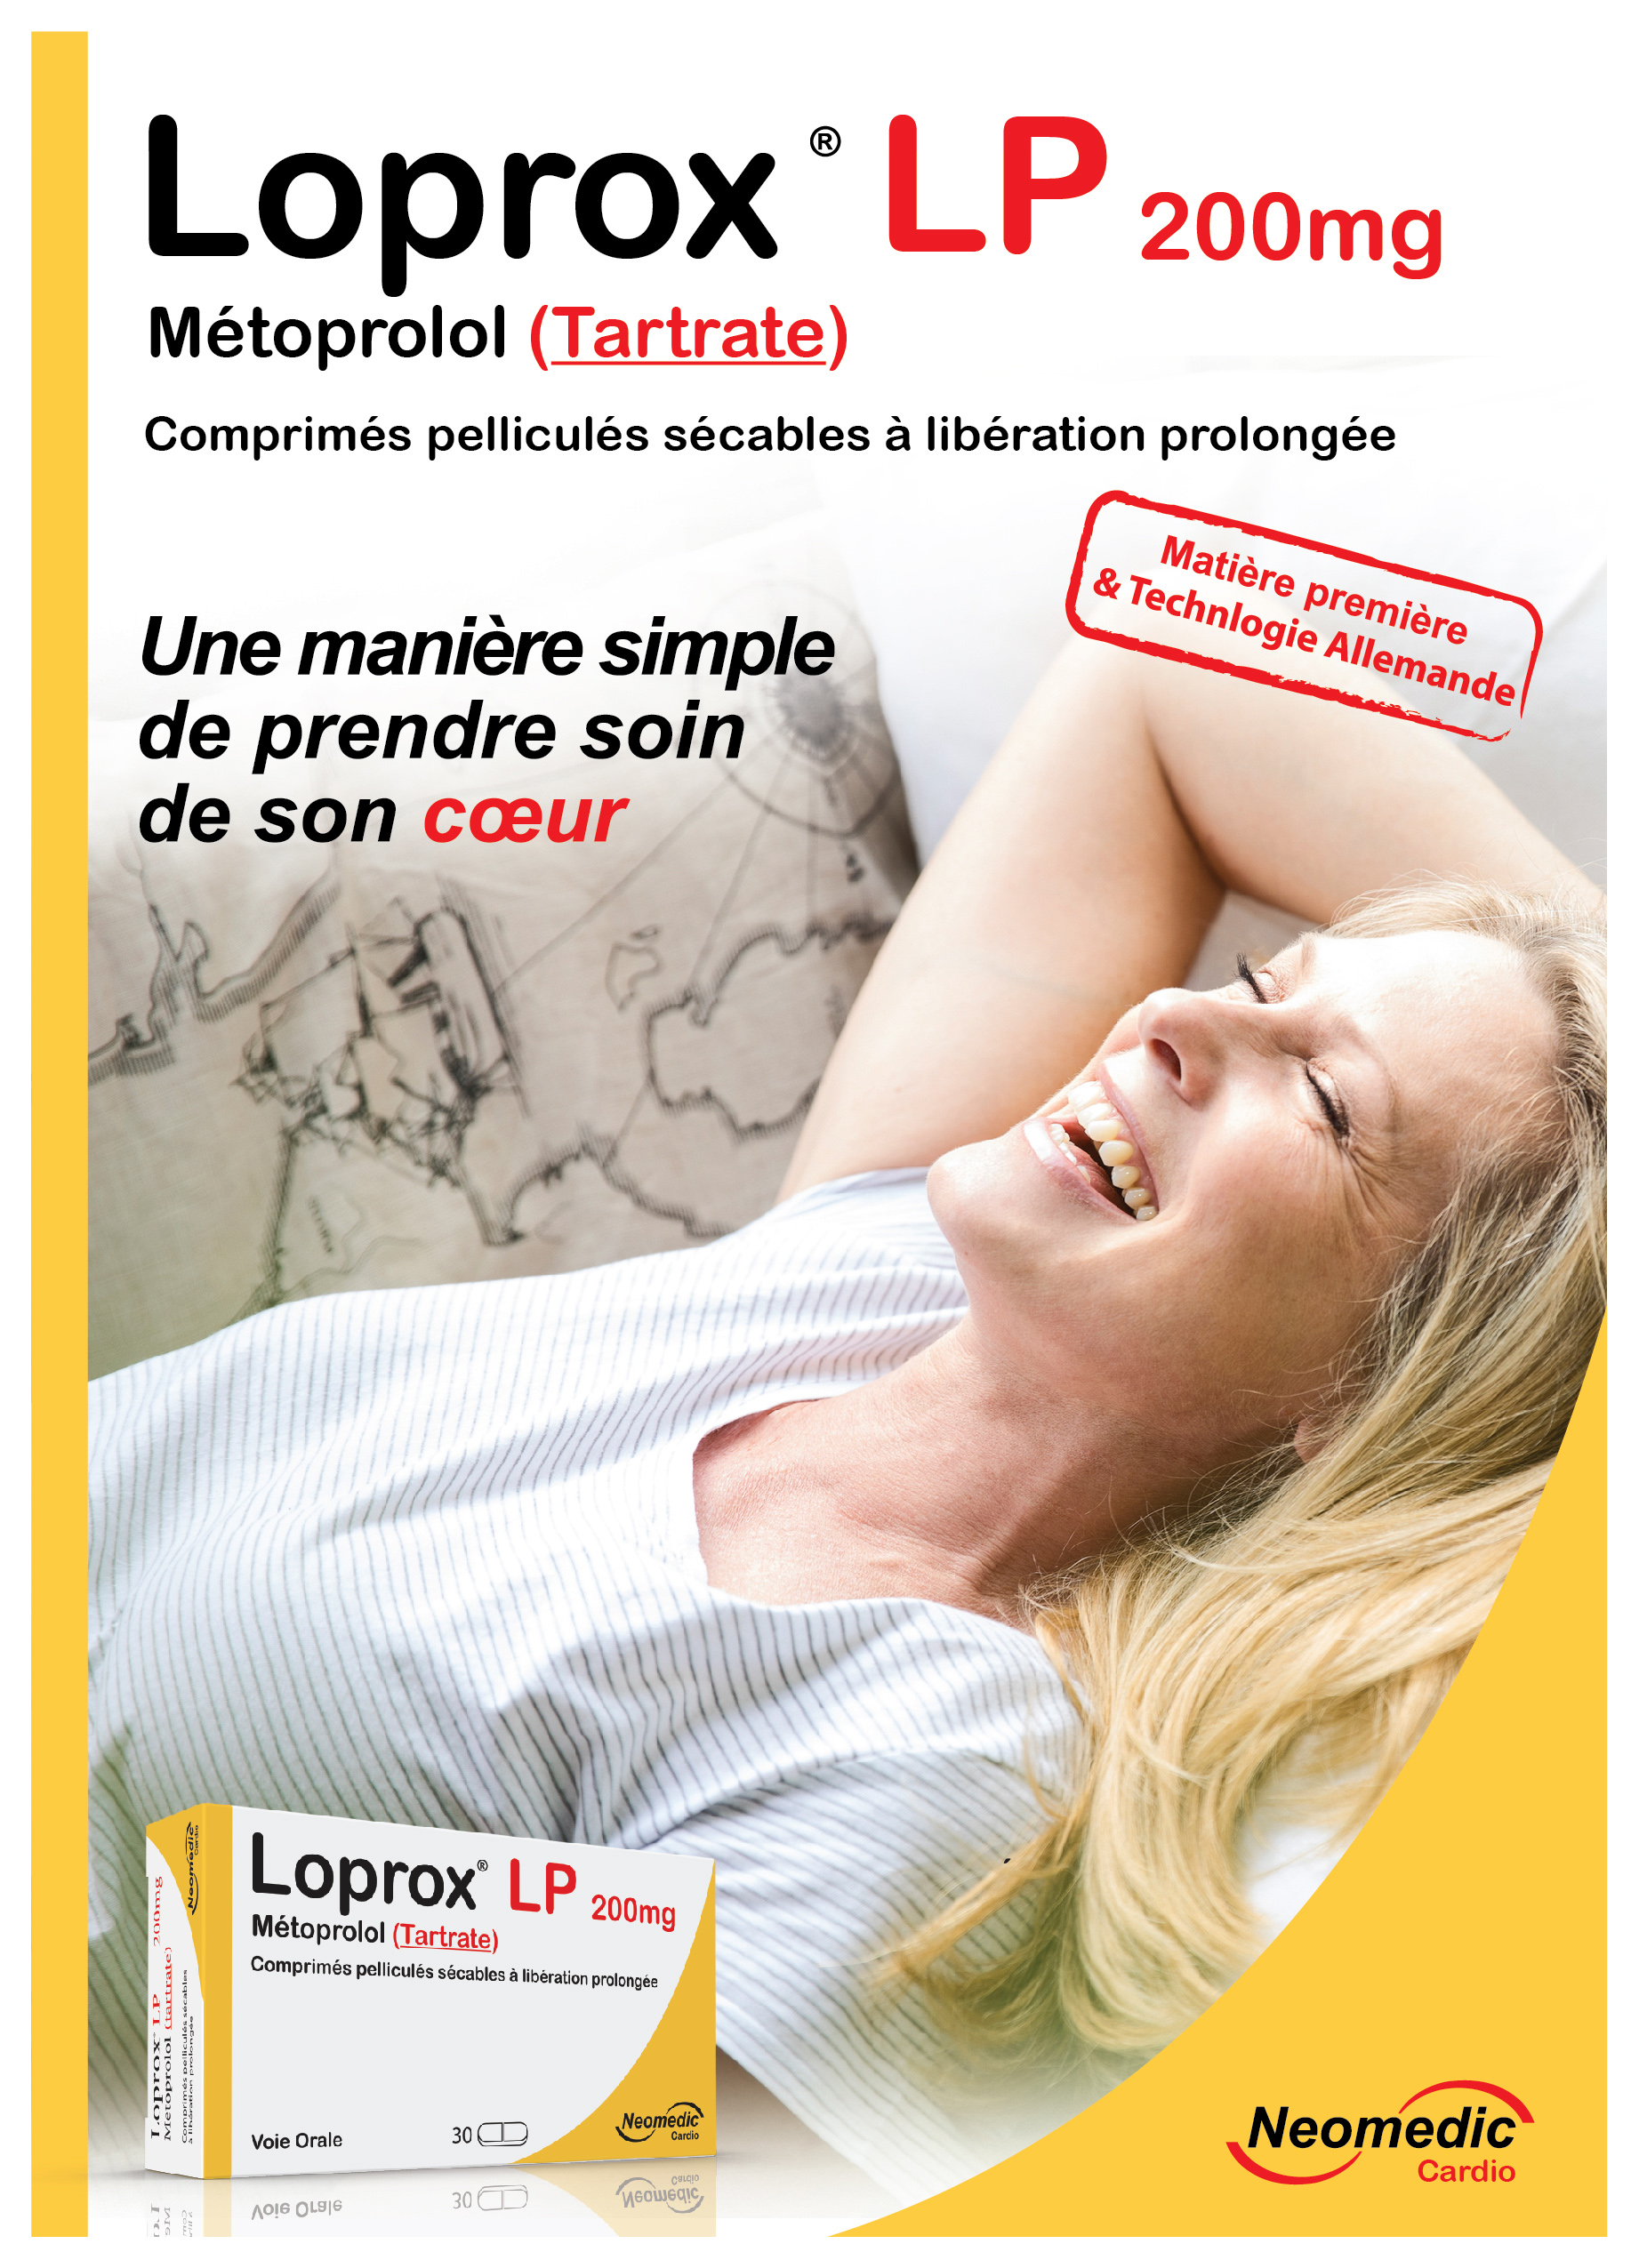 Loprox LP 200mg : Métoprolol (Tartrate)